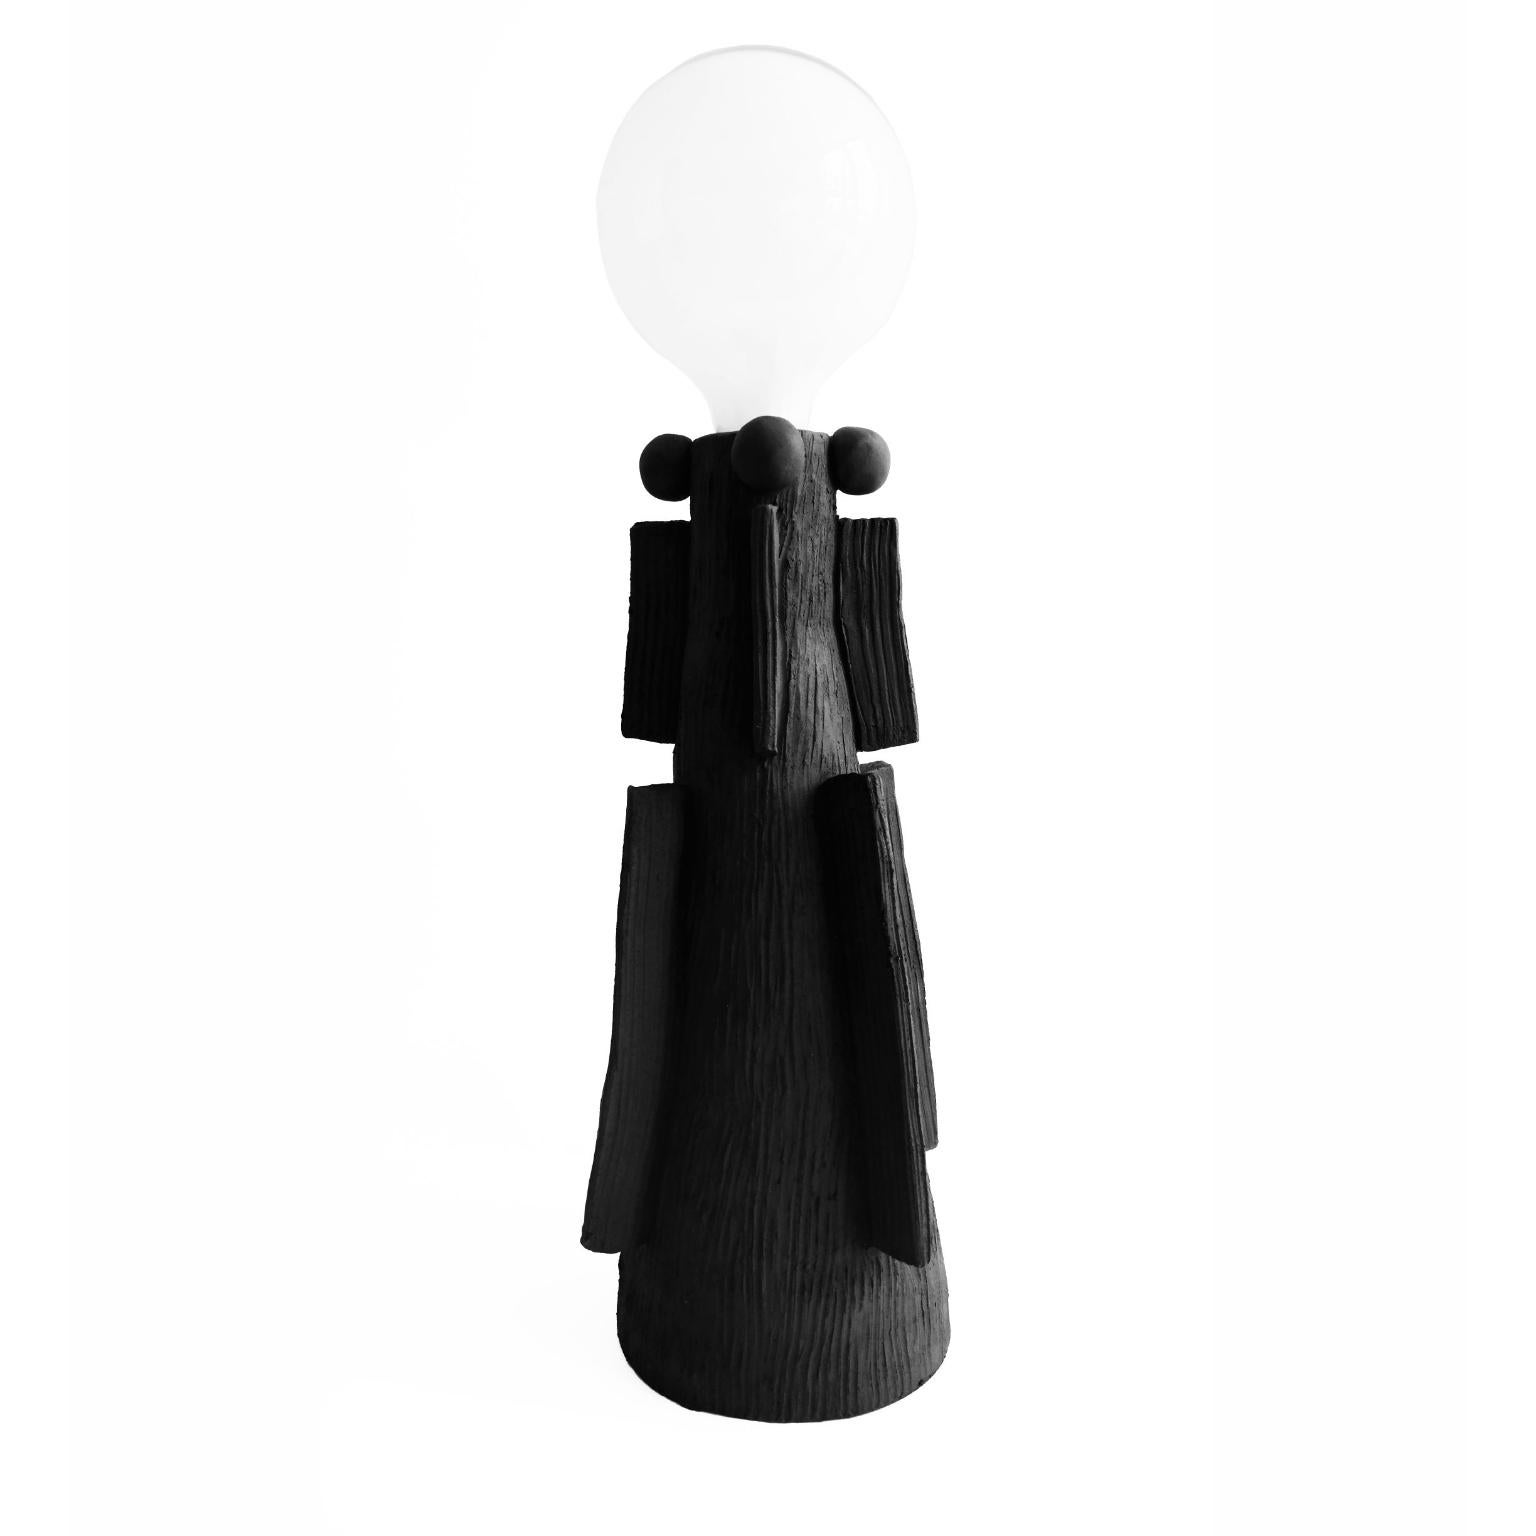 Izzi lampe de table Izzy lampe de table par Ia Kutateladze
Dimensions : L 18 x H 34 cm
MATERIAL : Argile, céramique

Lampe en céramique fabriquée à la main, avec une forme minimaliste et une surface brute et texturée.

IAAI / Ia Kutateladze est un